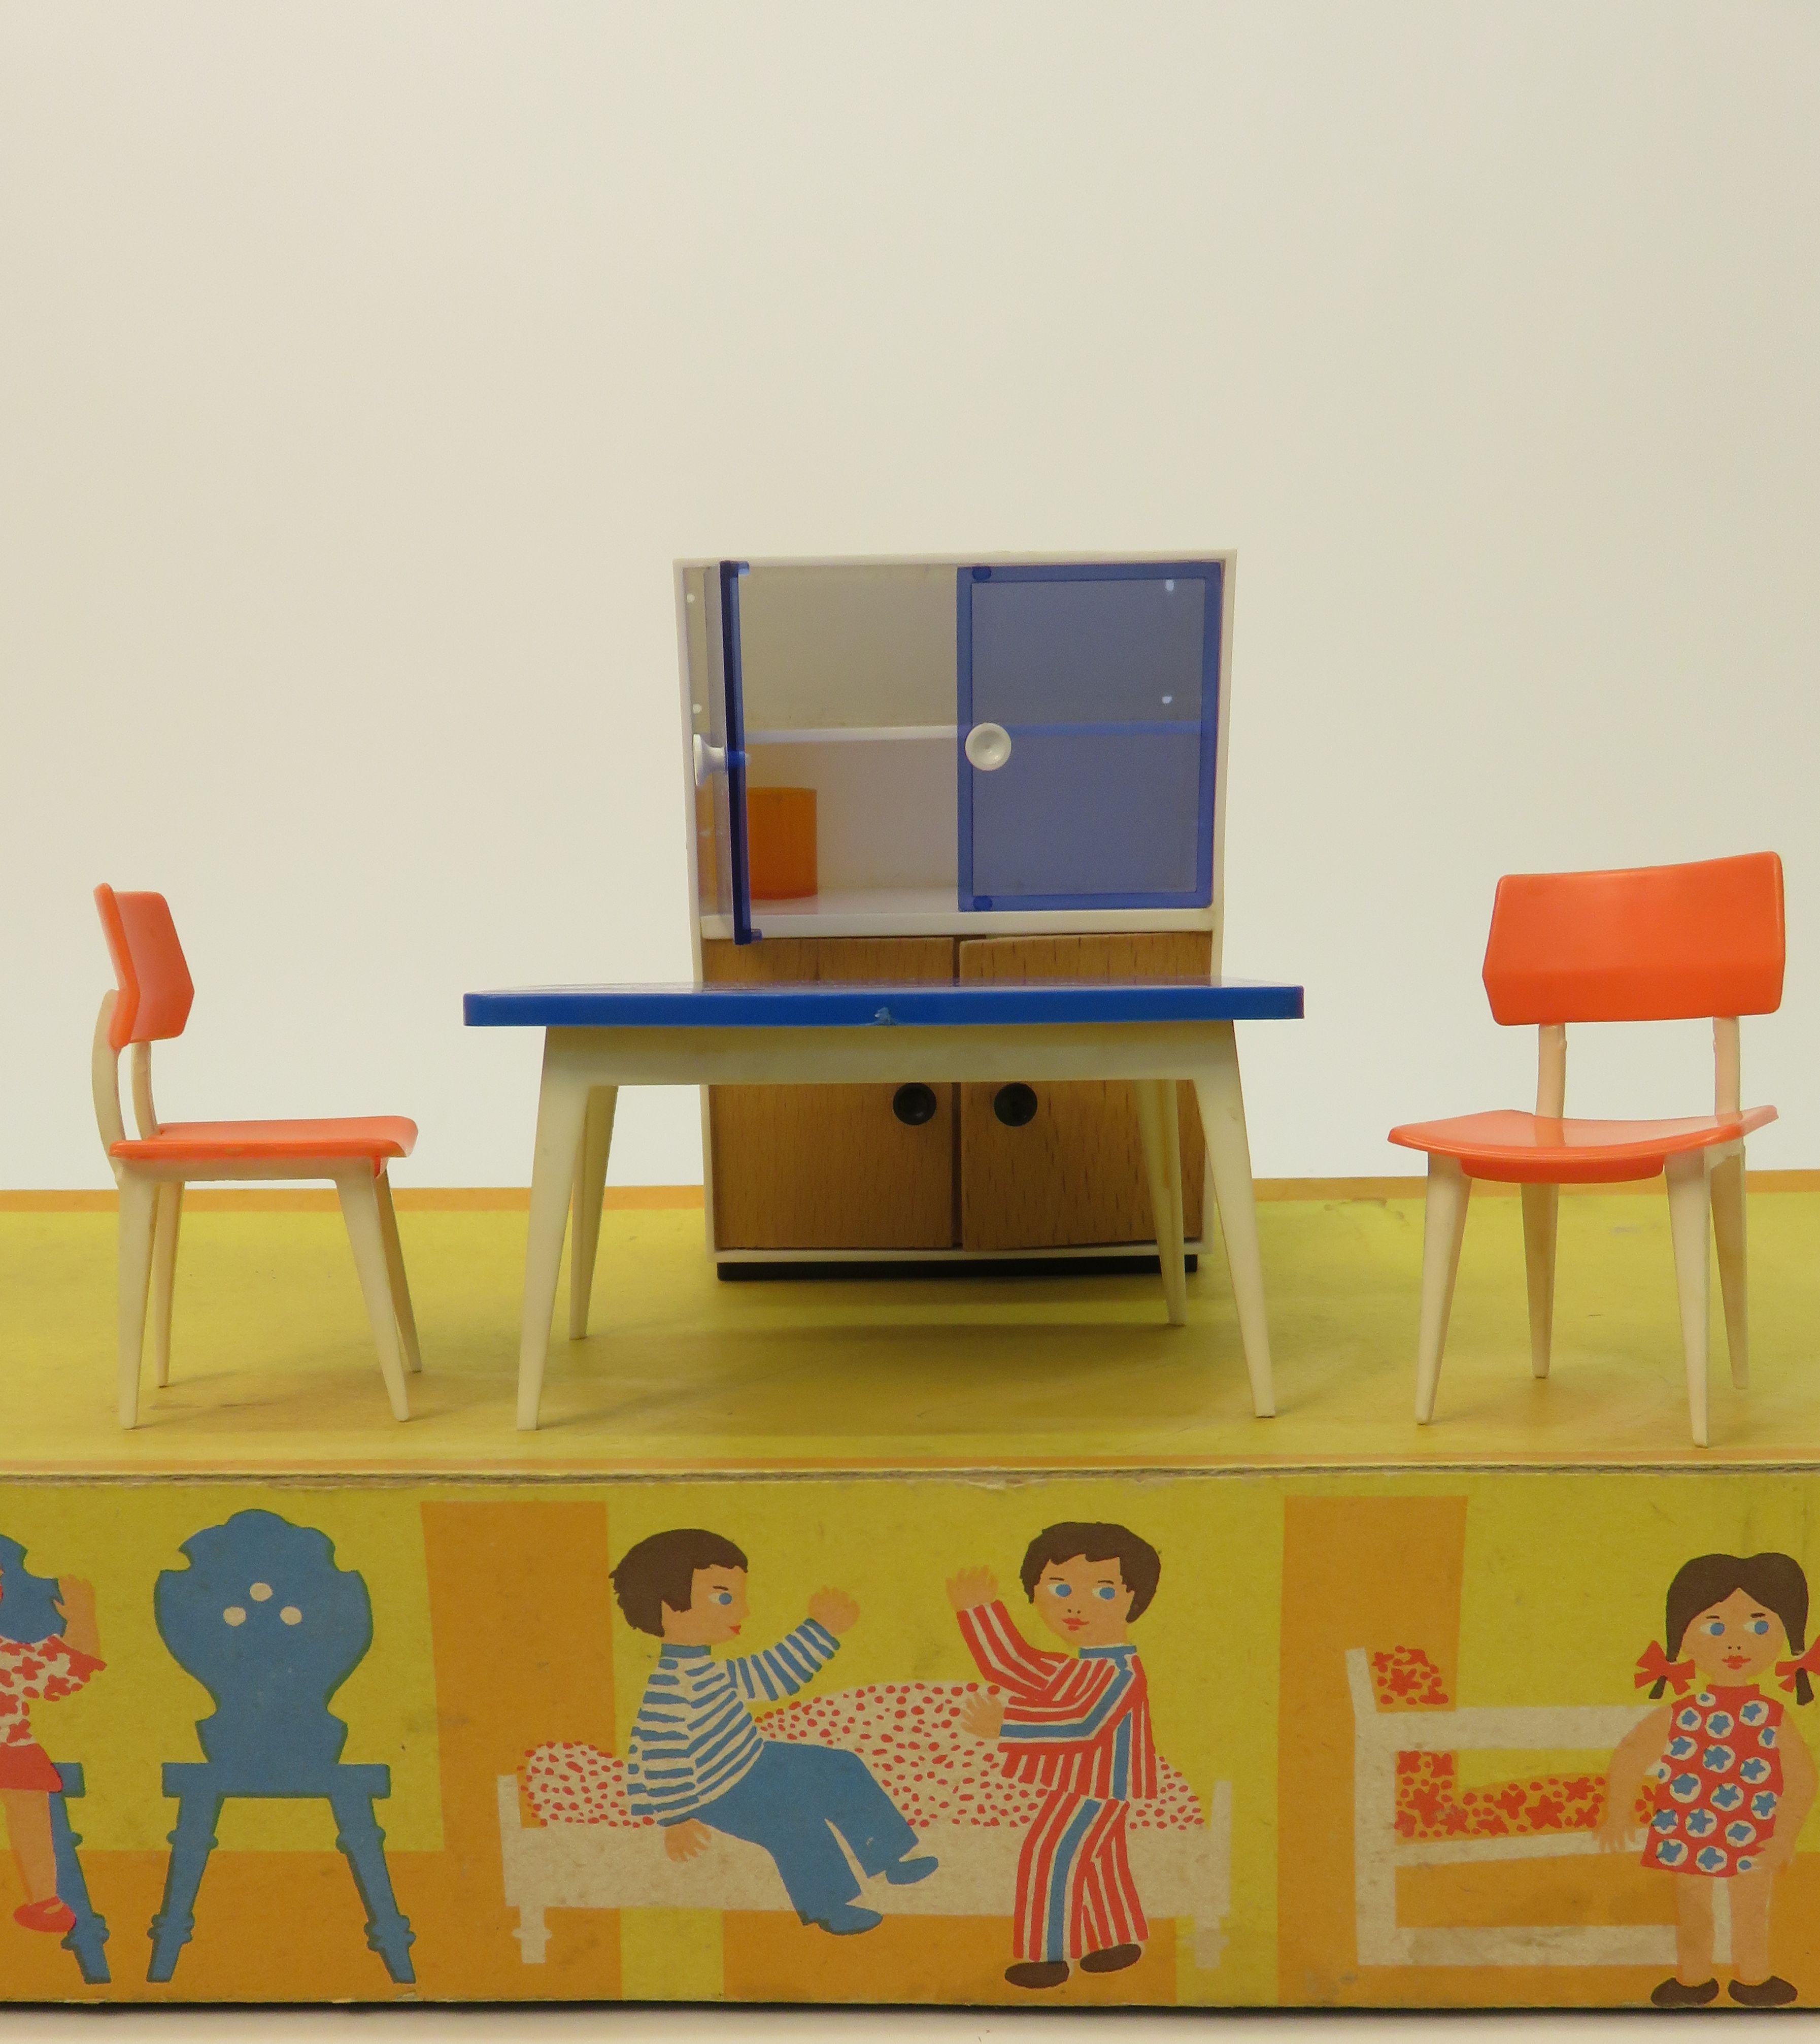 Zwei Miniaturstühle und ein Miniaturtisch stehen vor einem Miniaturschrank. Das gelbe Podest, auf dem die Puppenmöbel stehen, ist mit Zeichnungen von Puppenkindern in einer Puppenstube verziert.